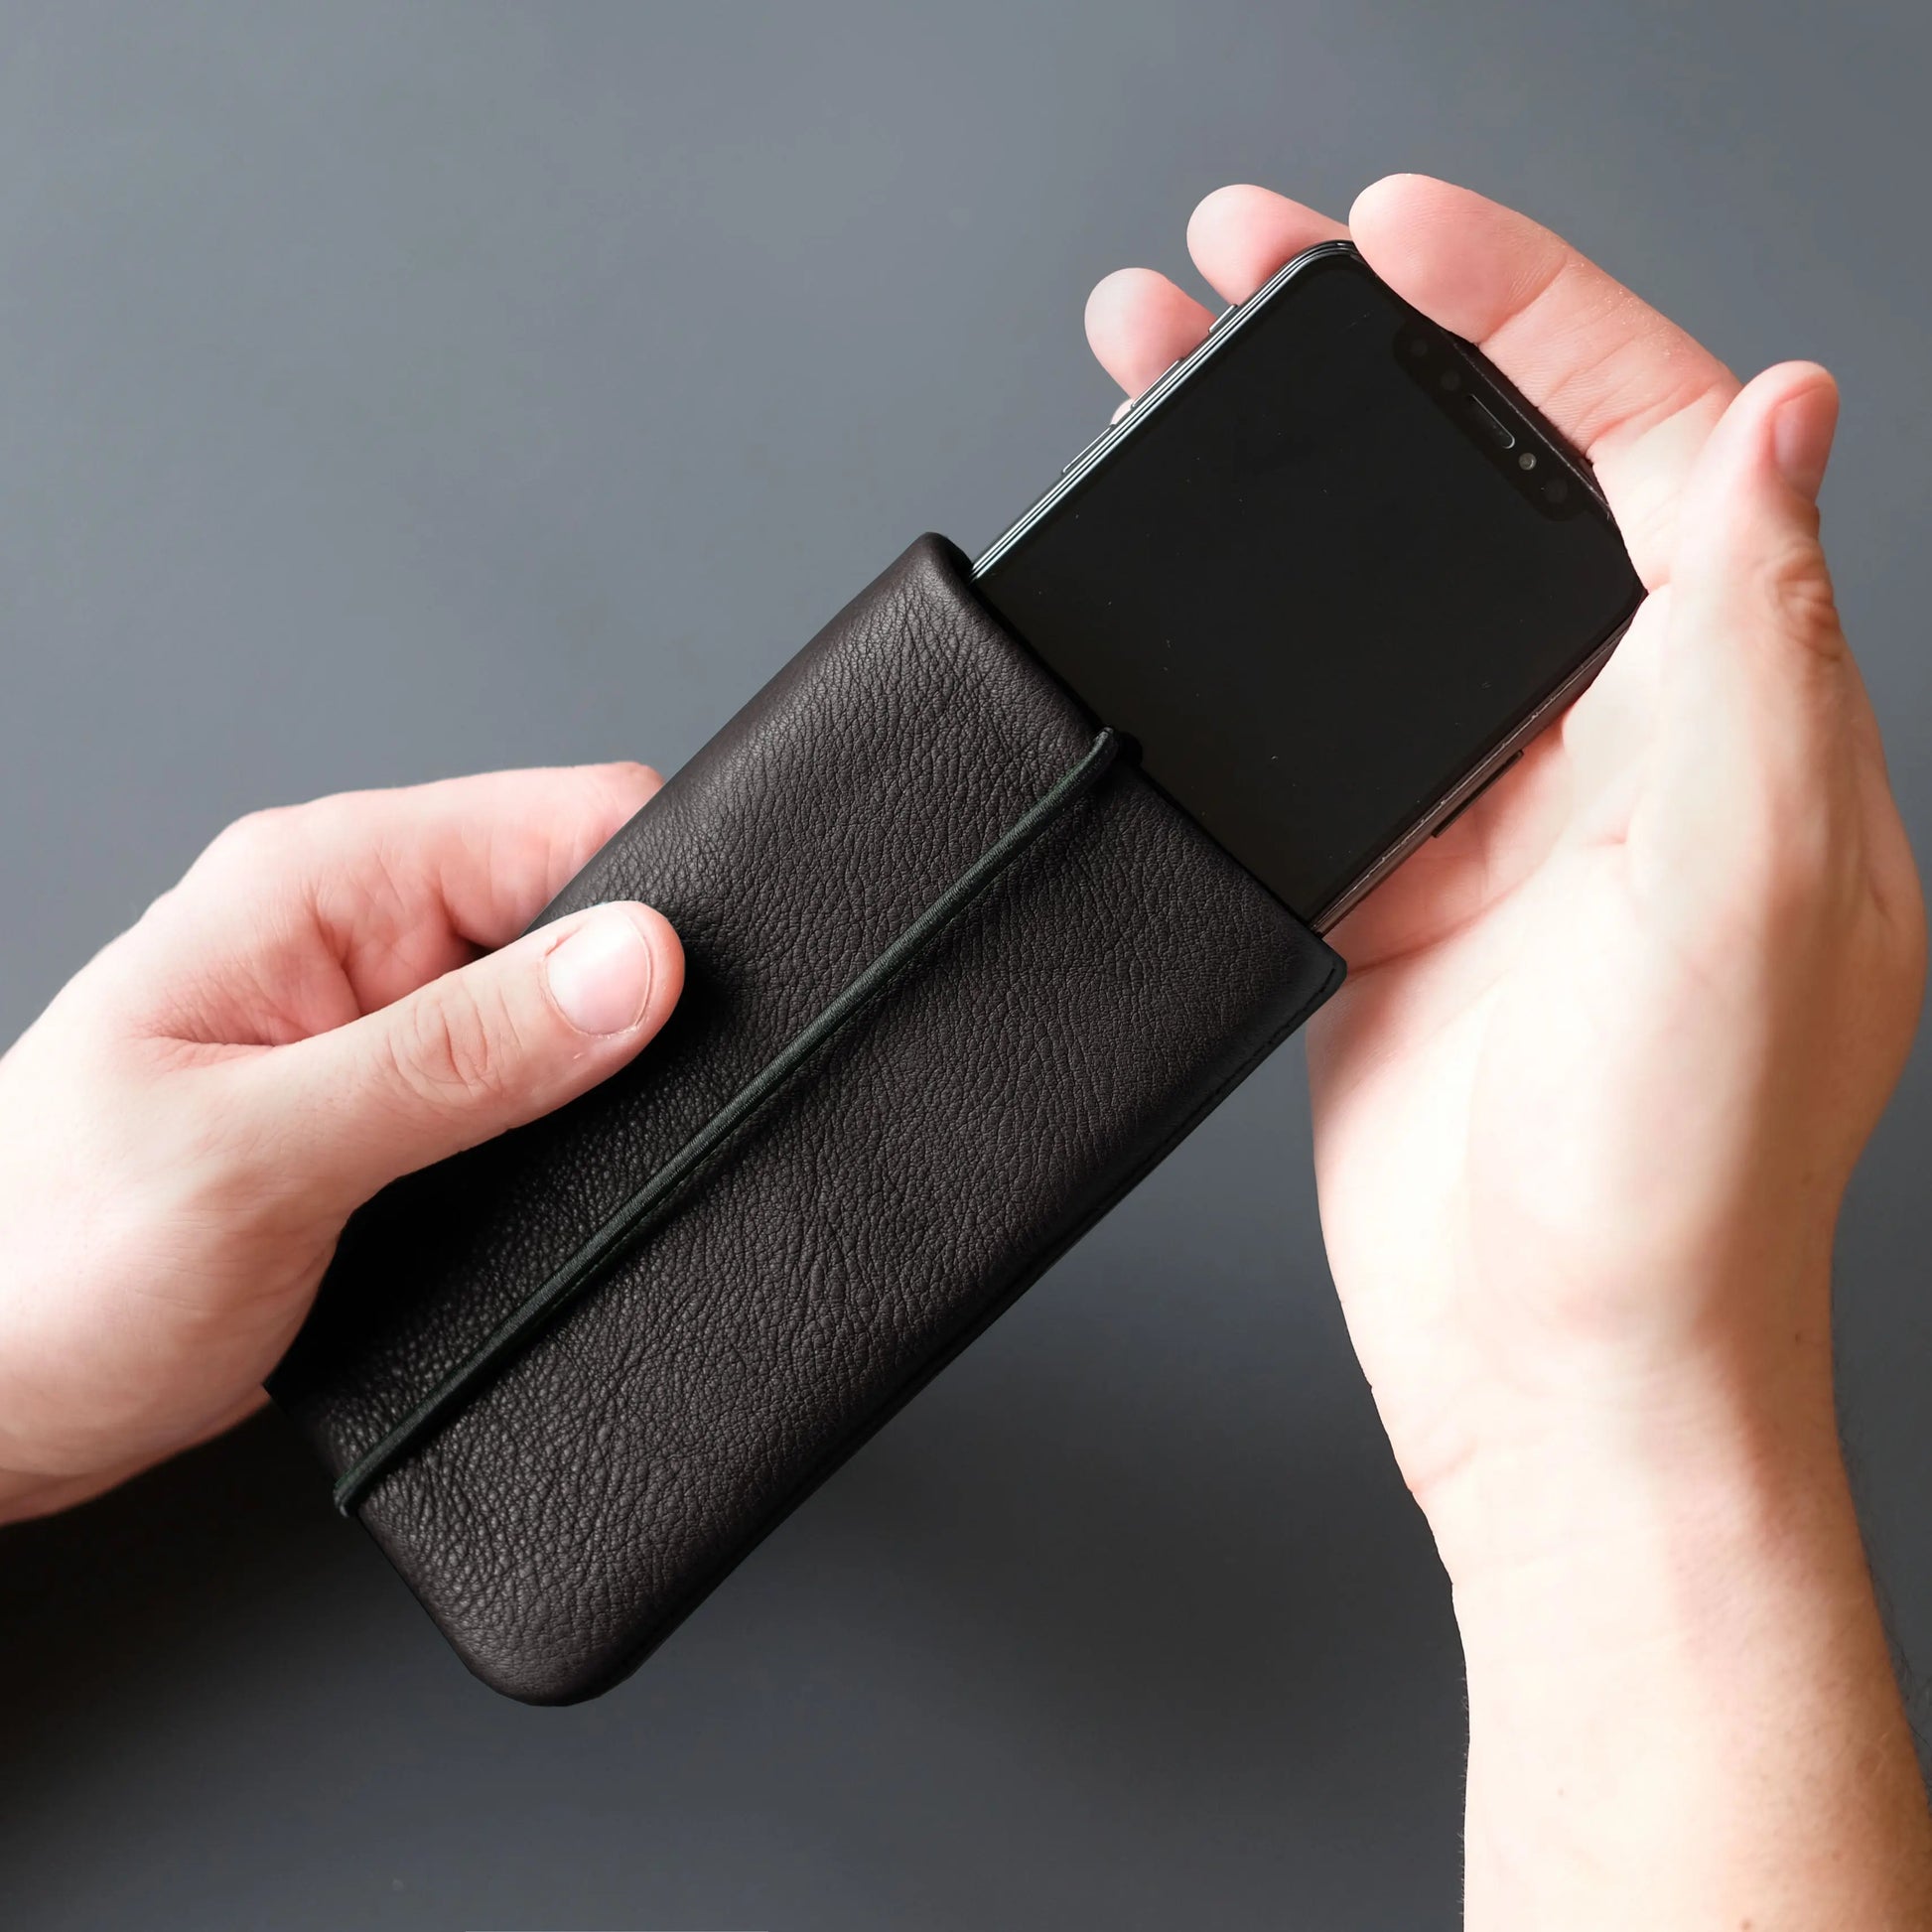 iPhone-Hülle aus schwarzem Leder in die mit zwei Händen ein Smartphone geschoben wird